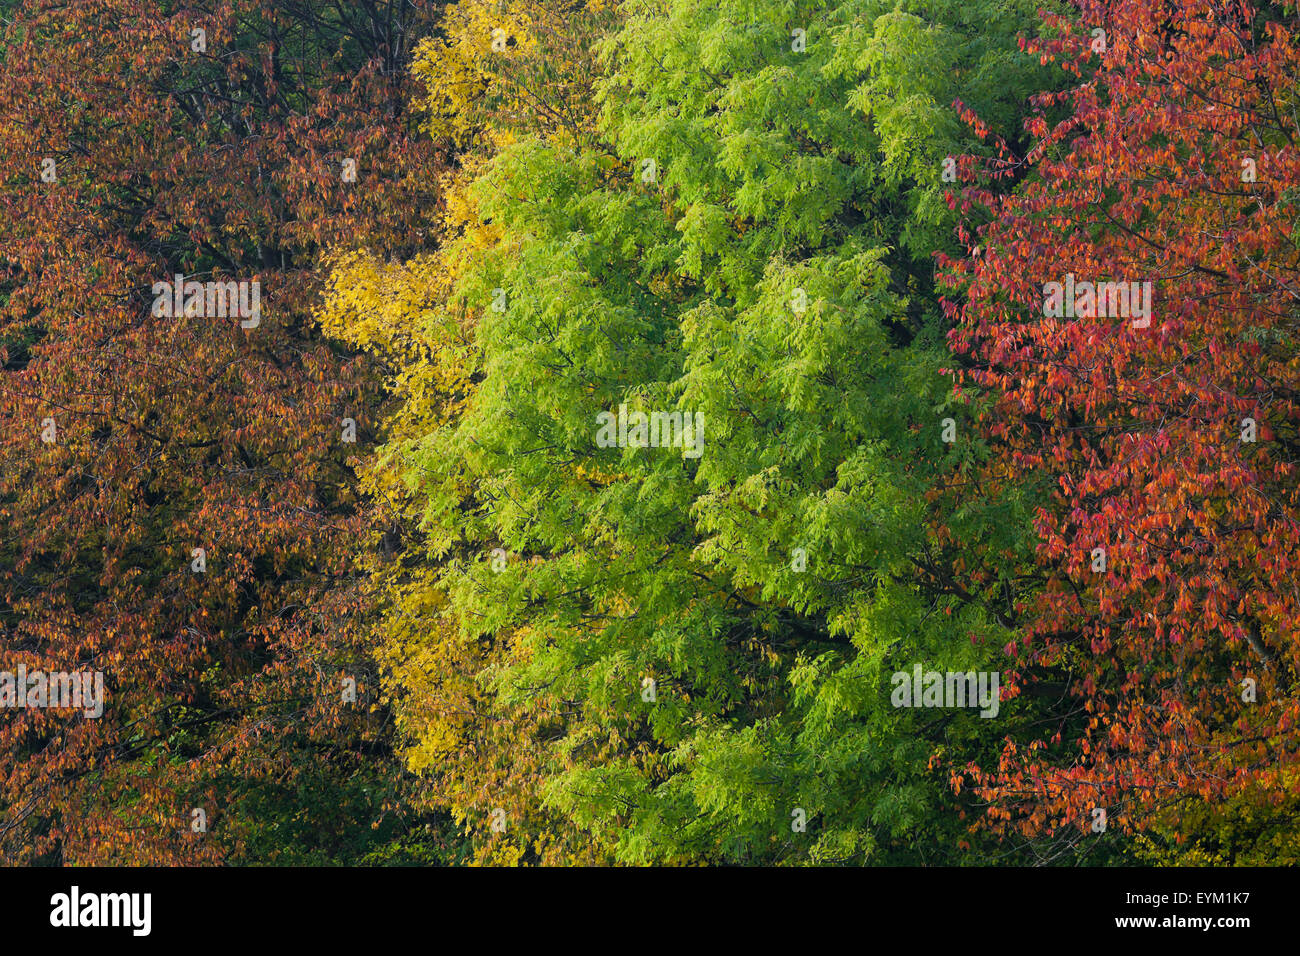 Herbst im Wienerwald, Laubmischwald bei Schwarzensee, Niederösterreich, Österreich, Foto de stock